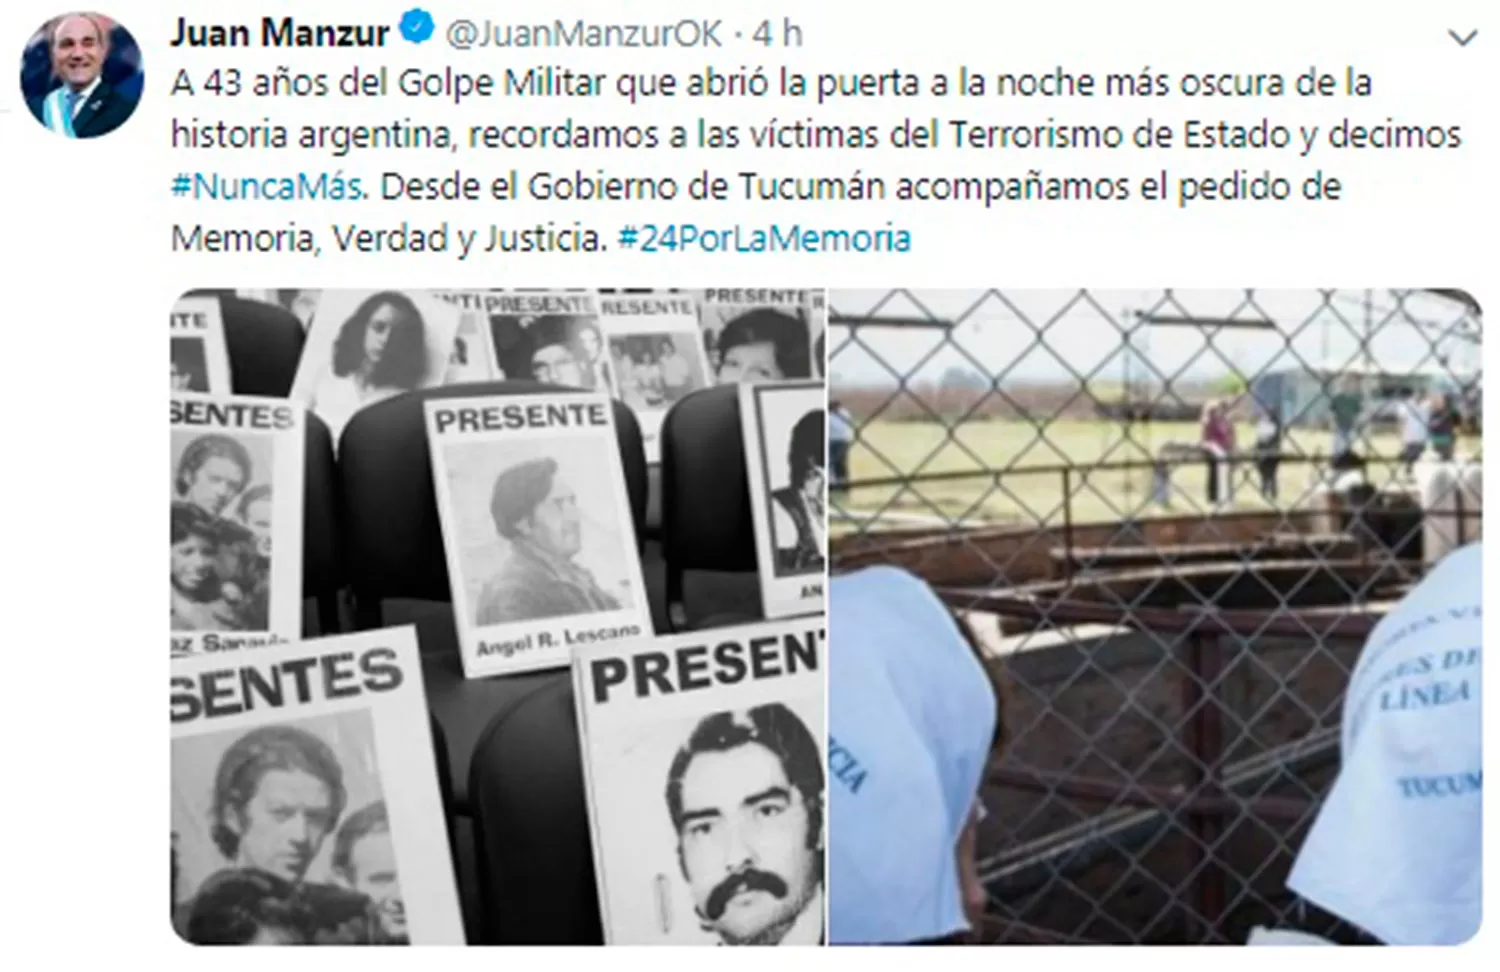 Manzur se sumó al hashtag #NuncaMás de los políticos por el Día de la Memoria